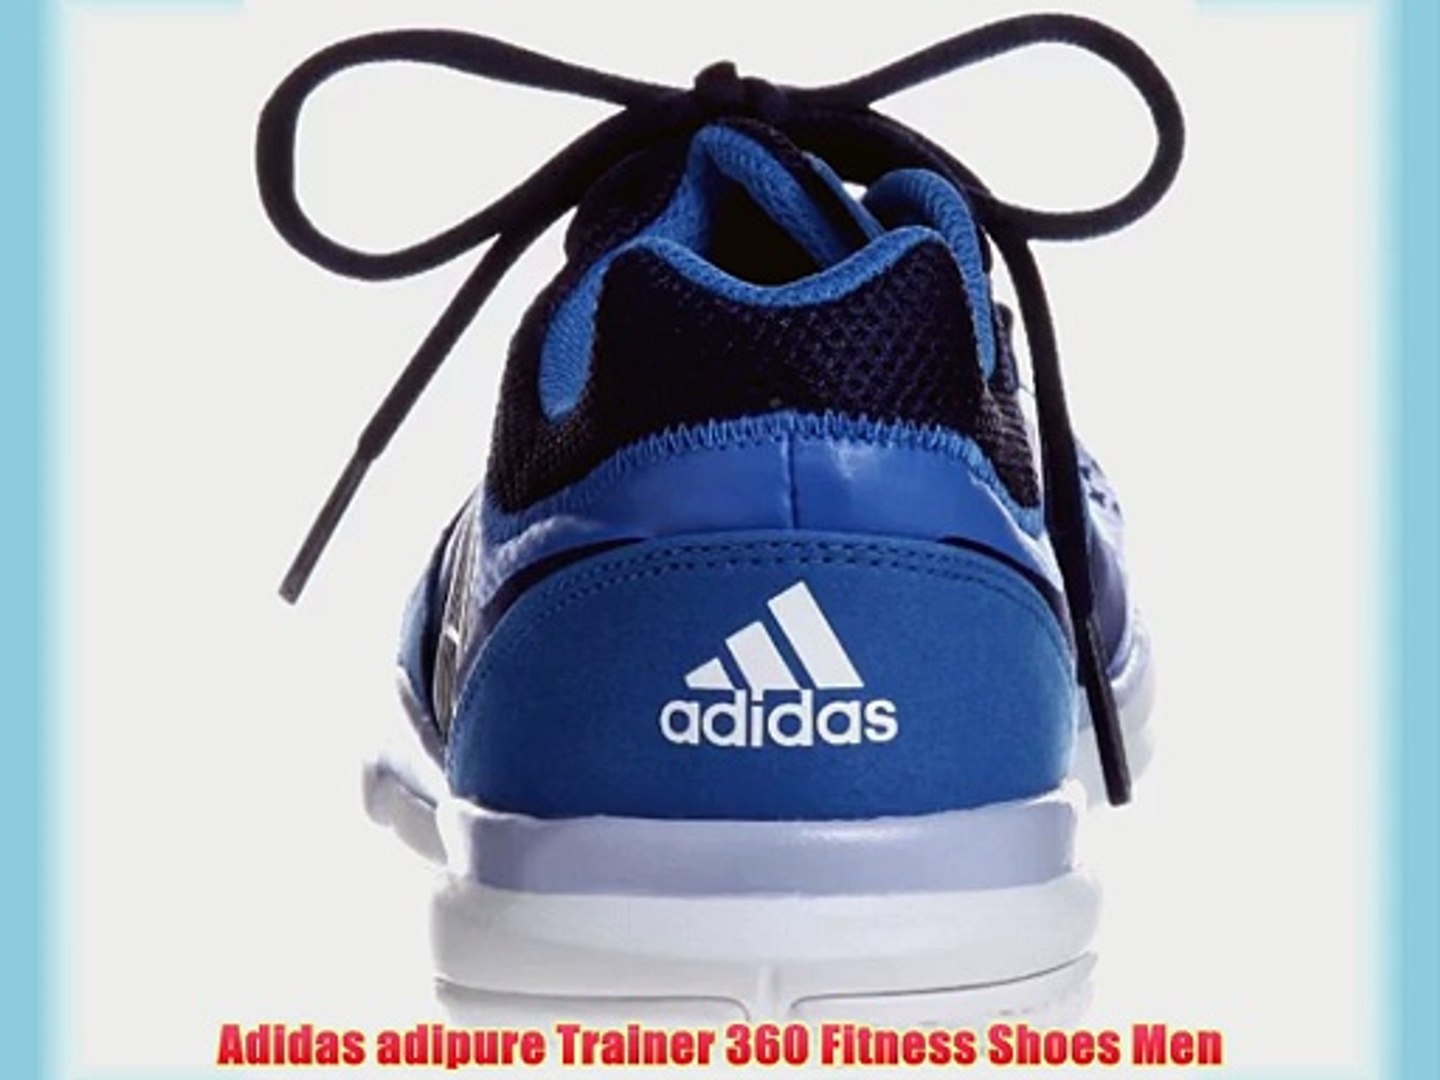 adidas adipure trainer 360